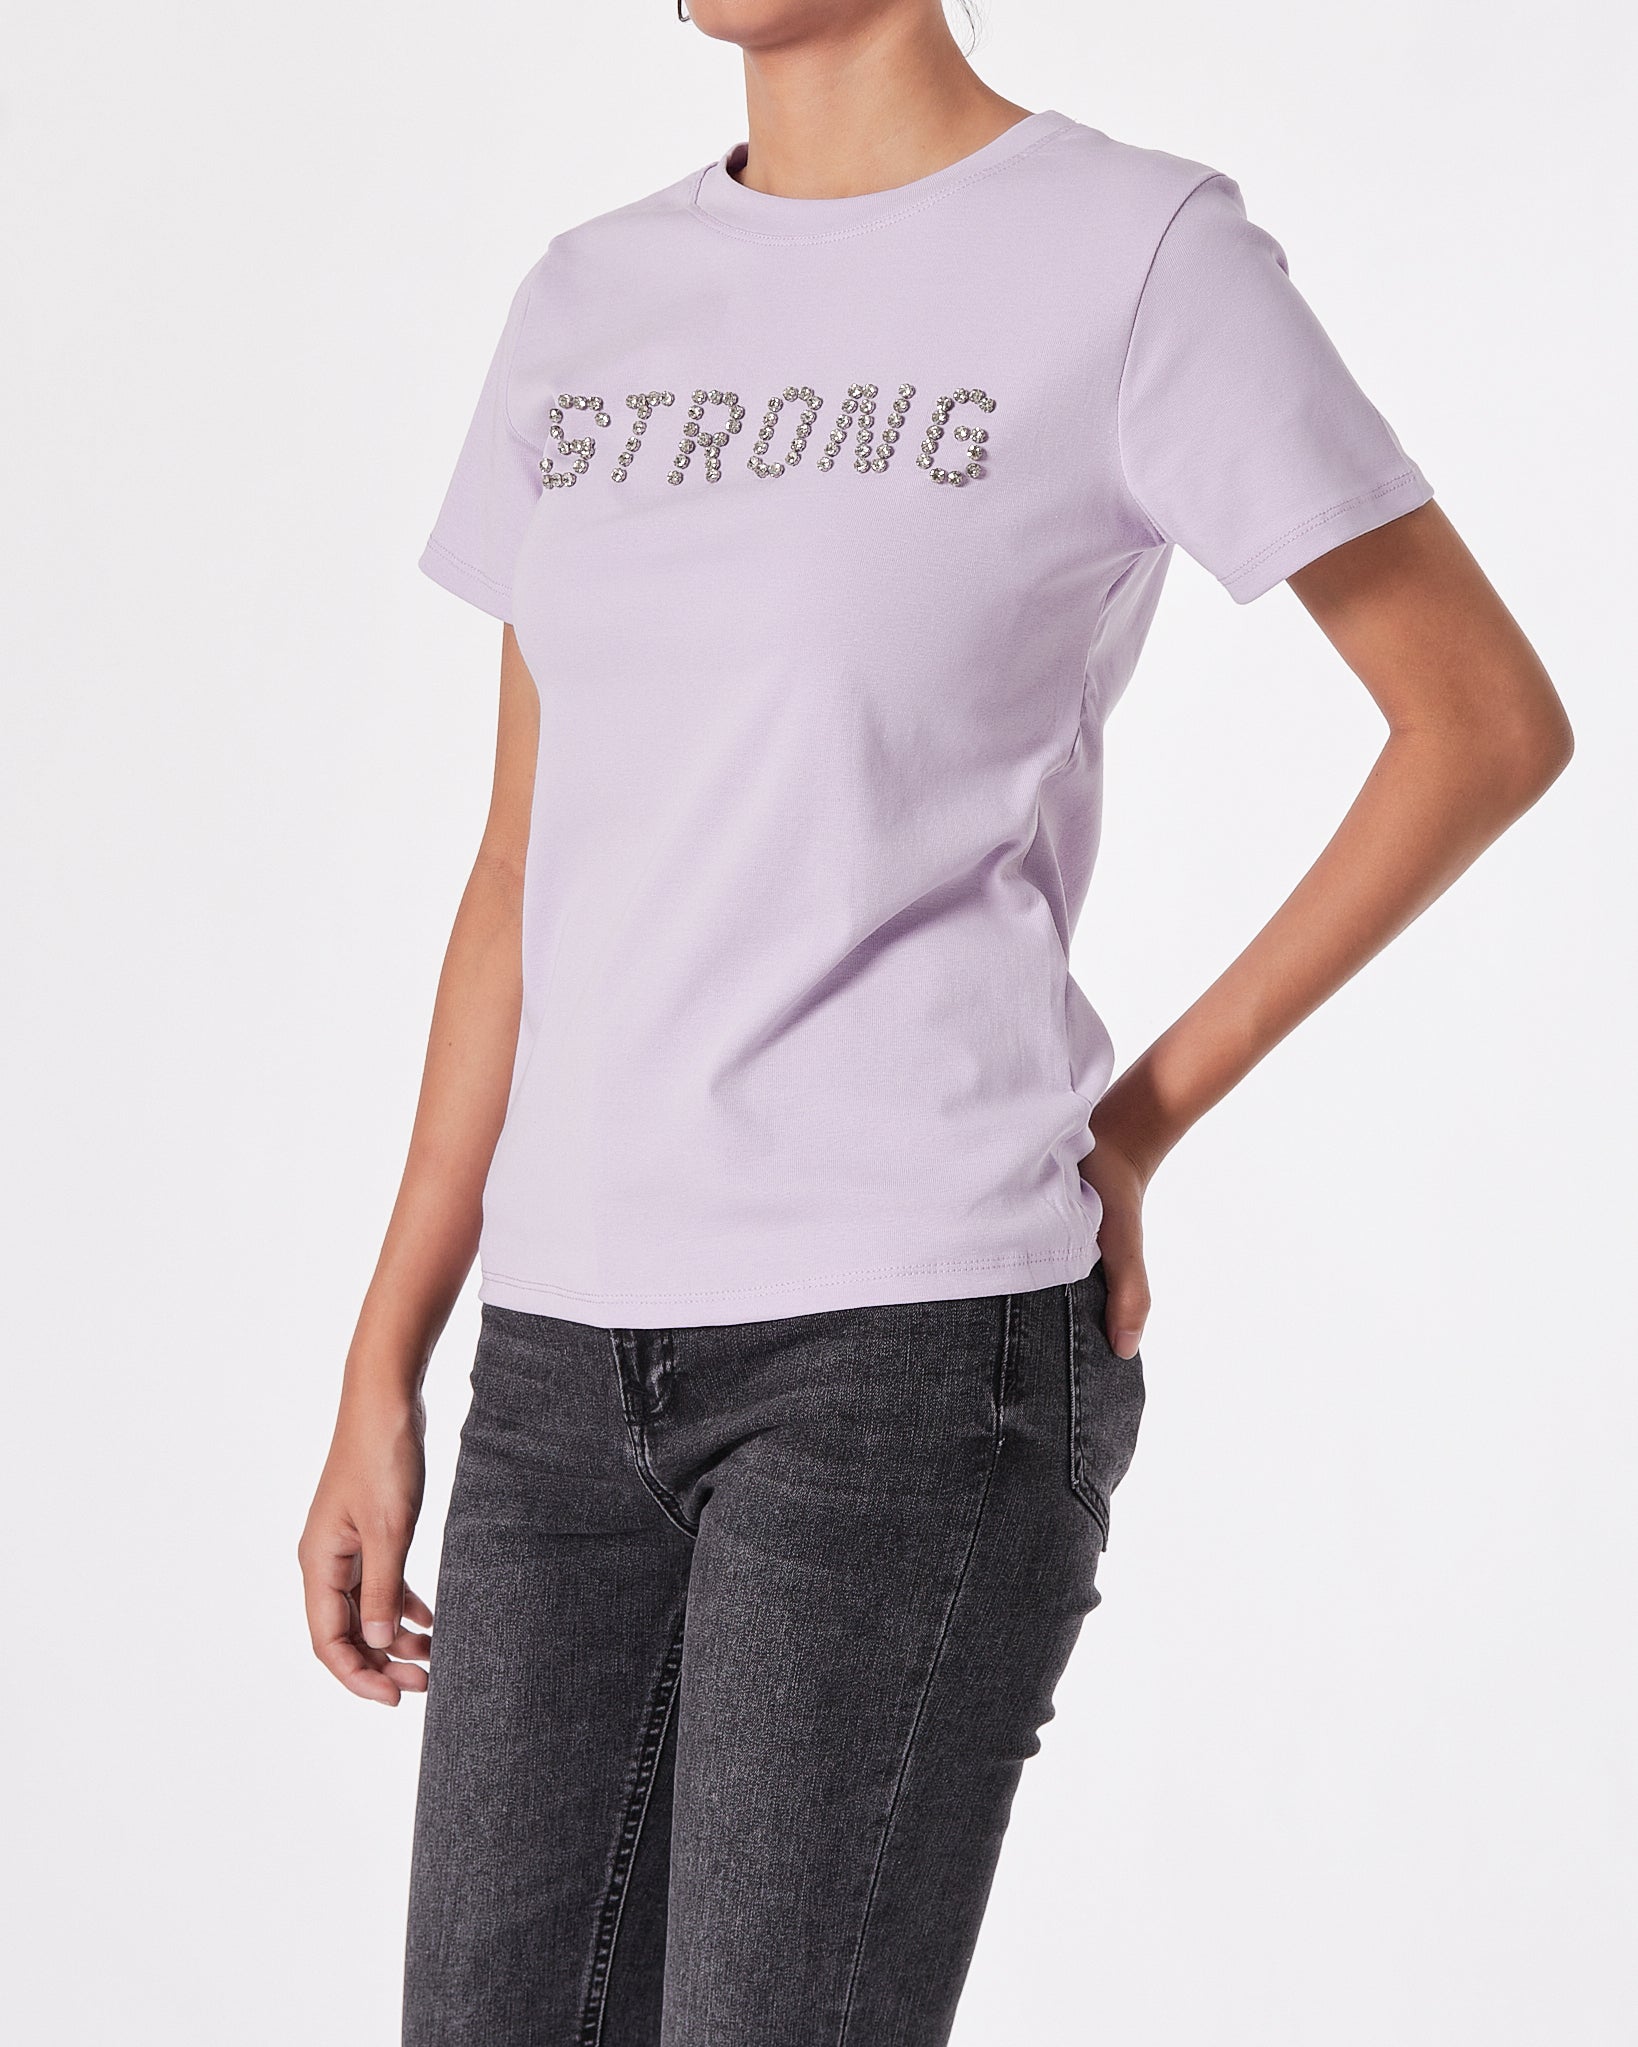 Strong Rhinestone Lady Purple T-Shirt 11.90